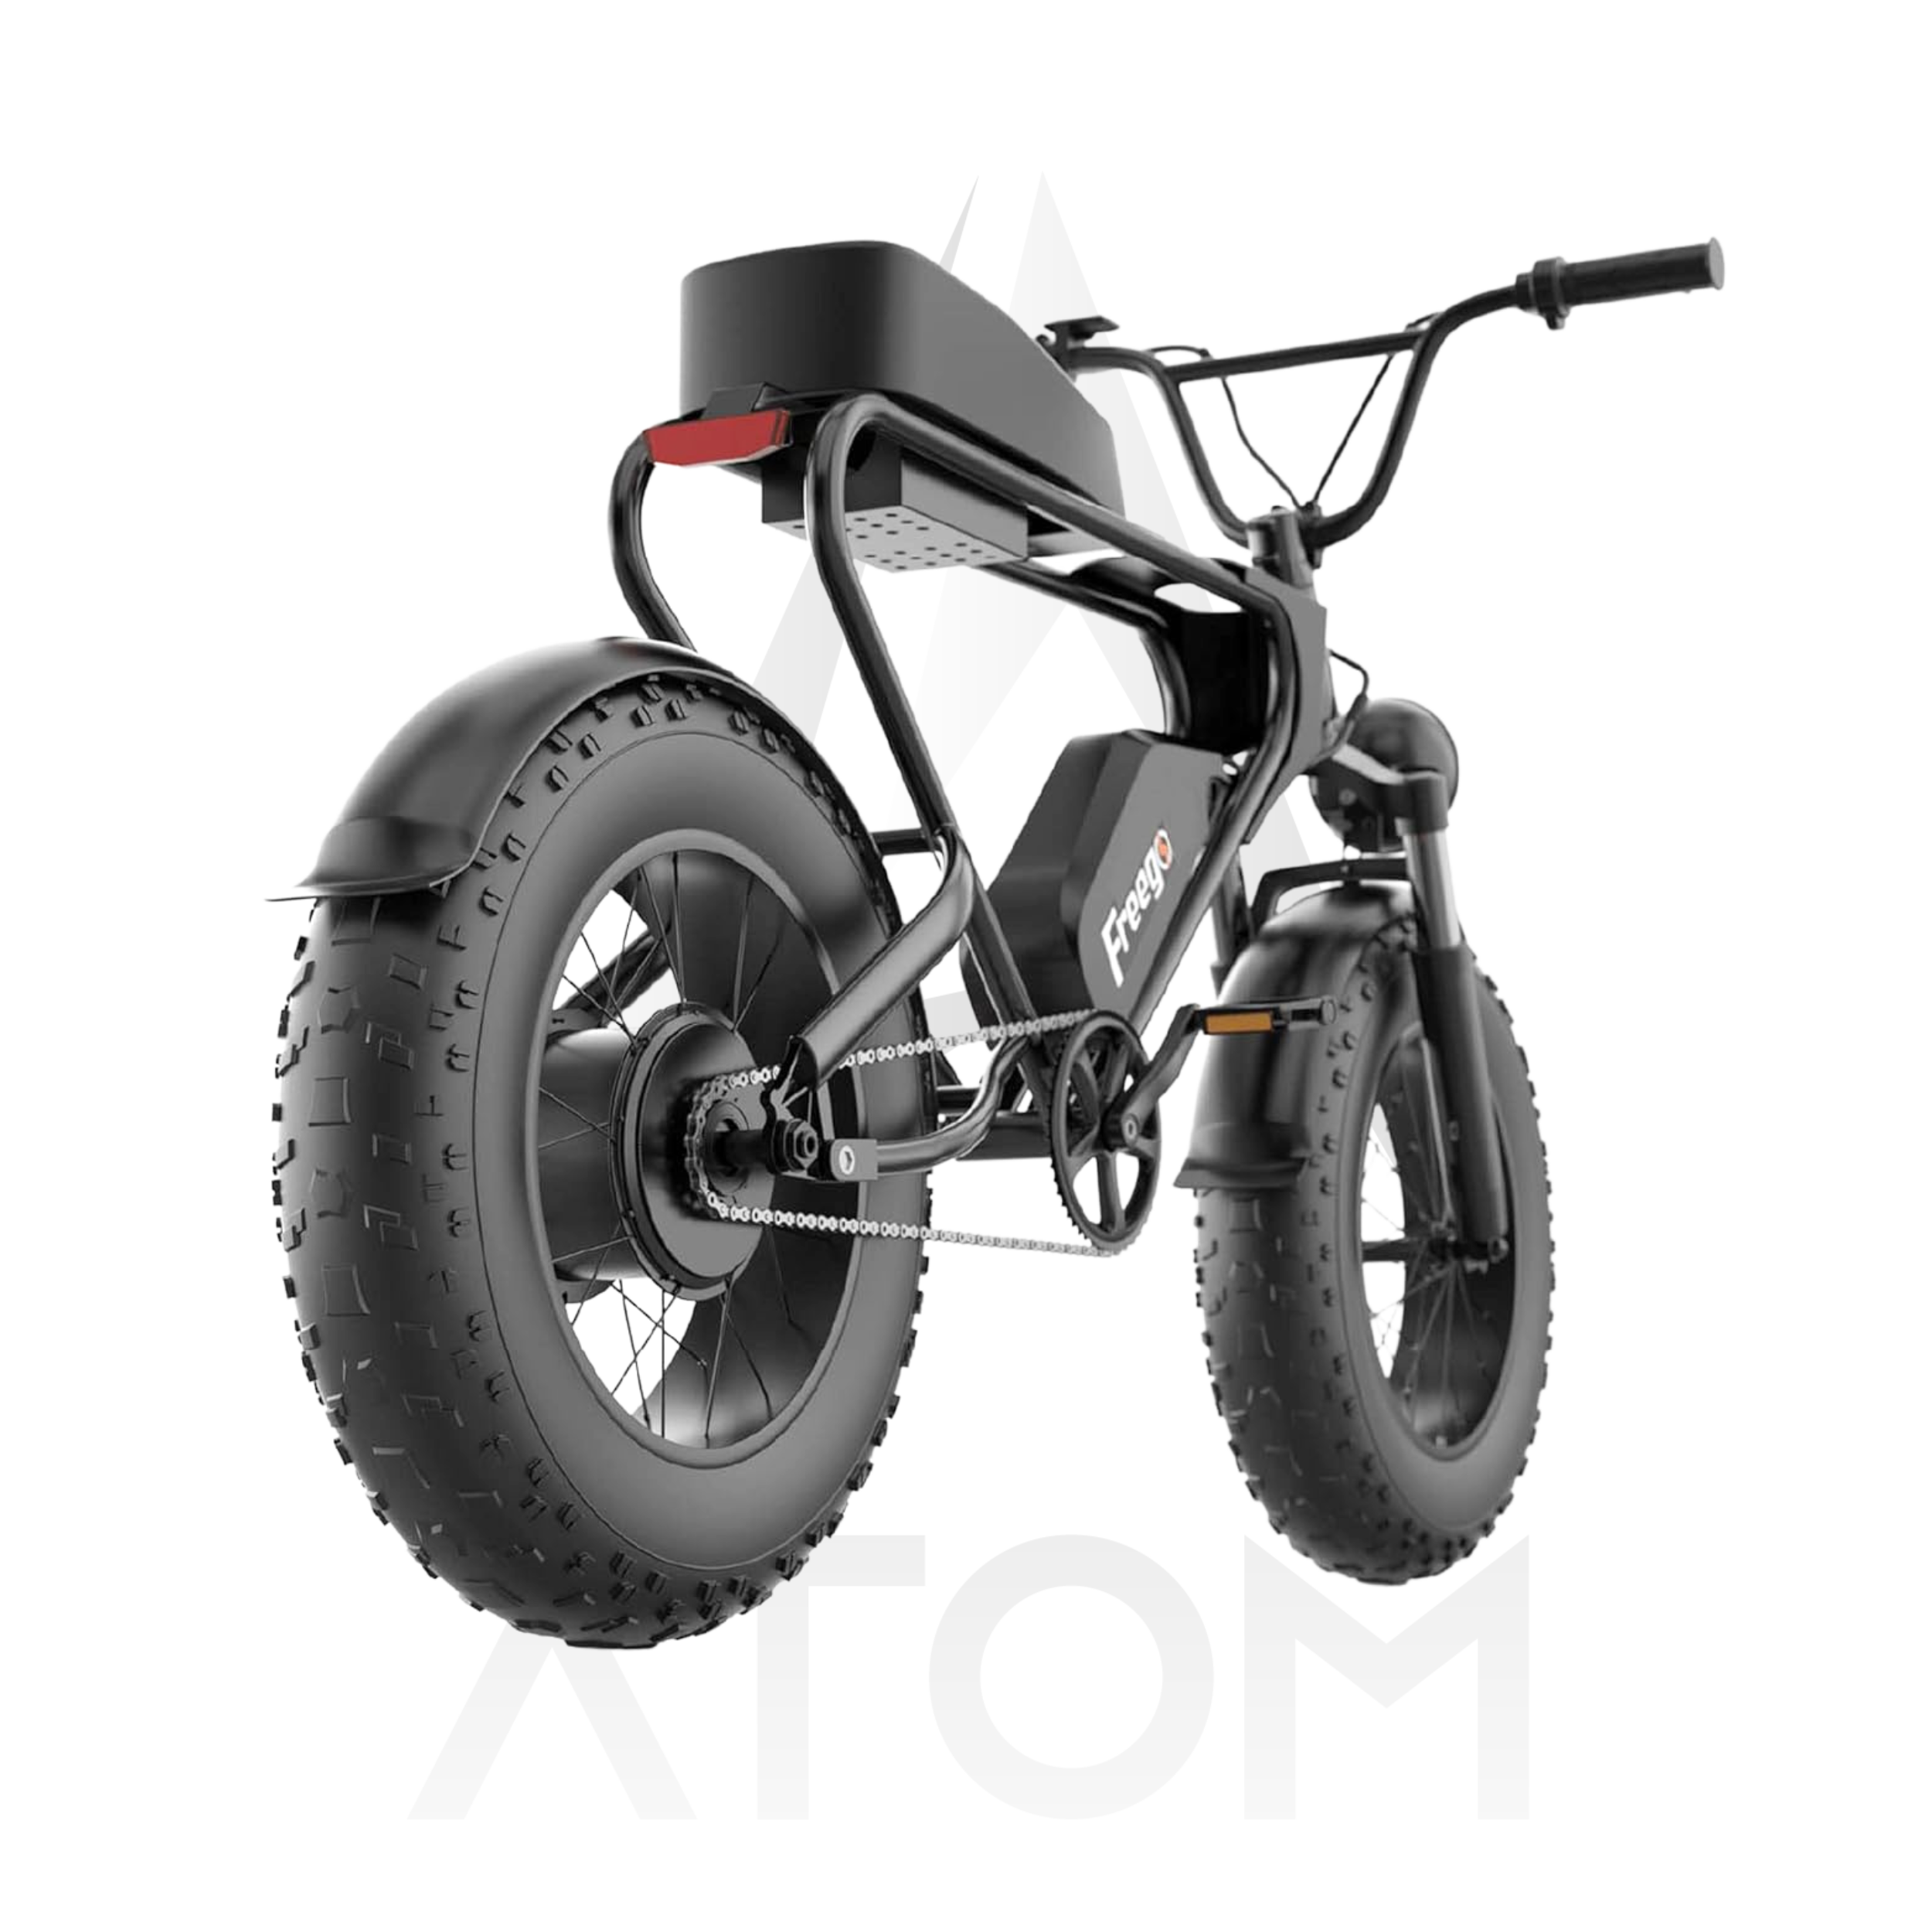 Vélo électrique Fatbike | FREEGO DK 200 | 1200 W | V-max 25 km/h | Autonomie 65 km - Atom Motors